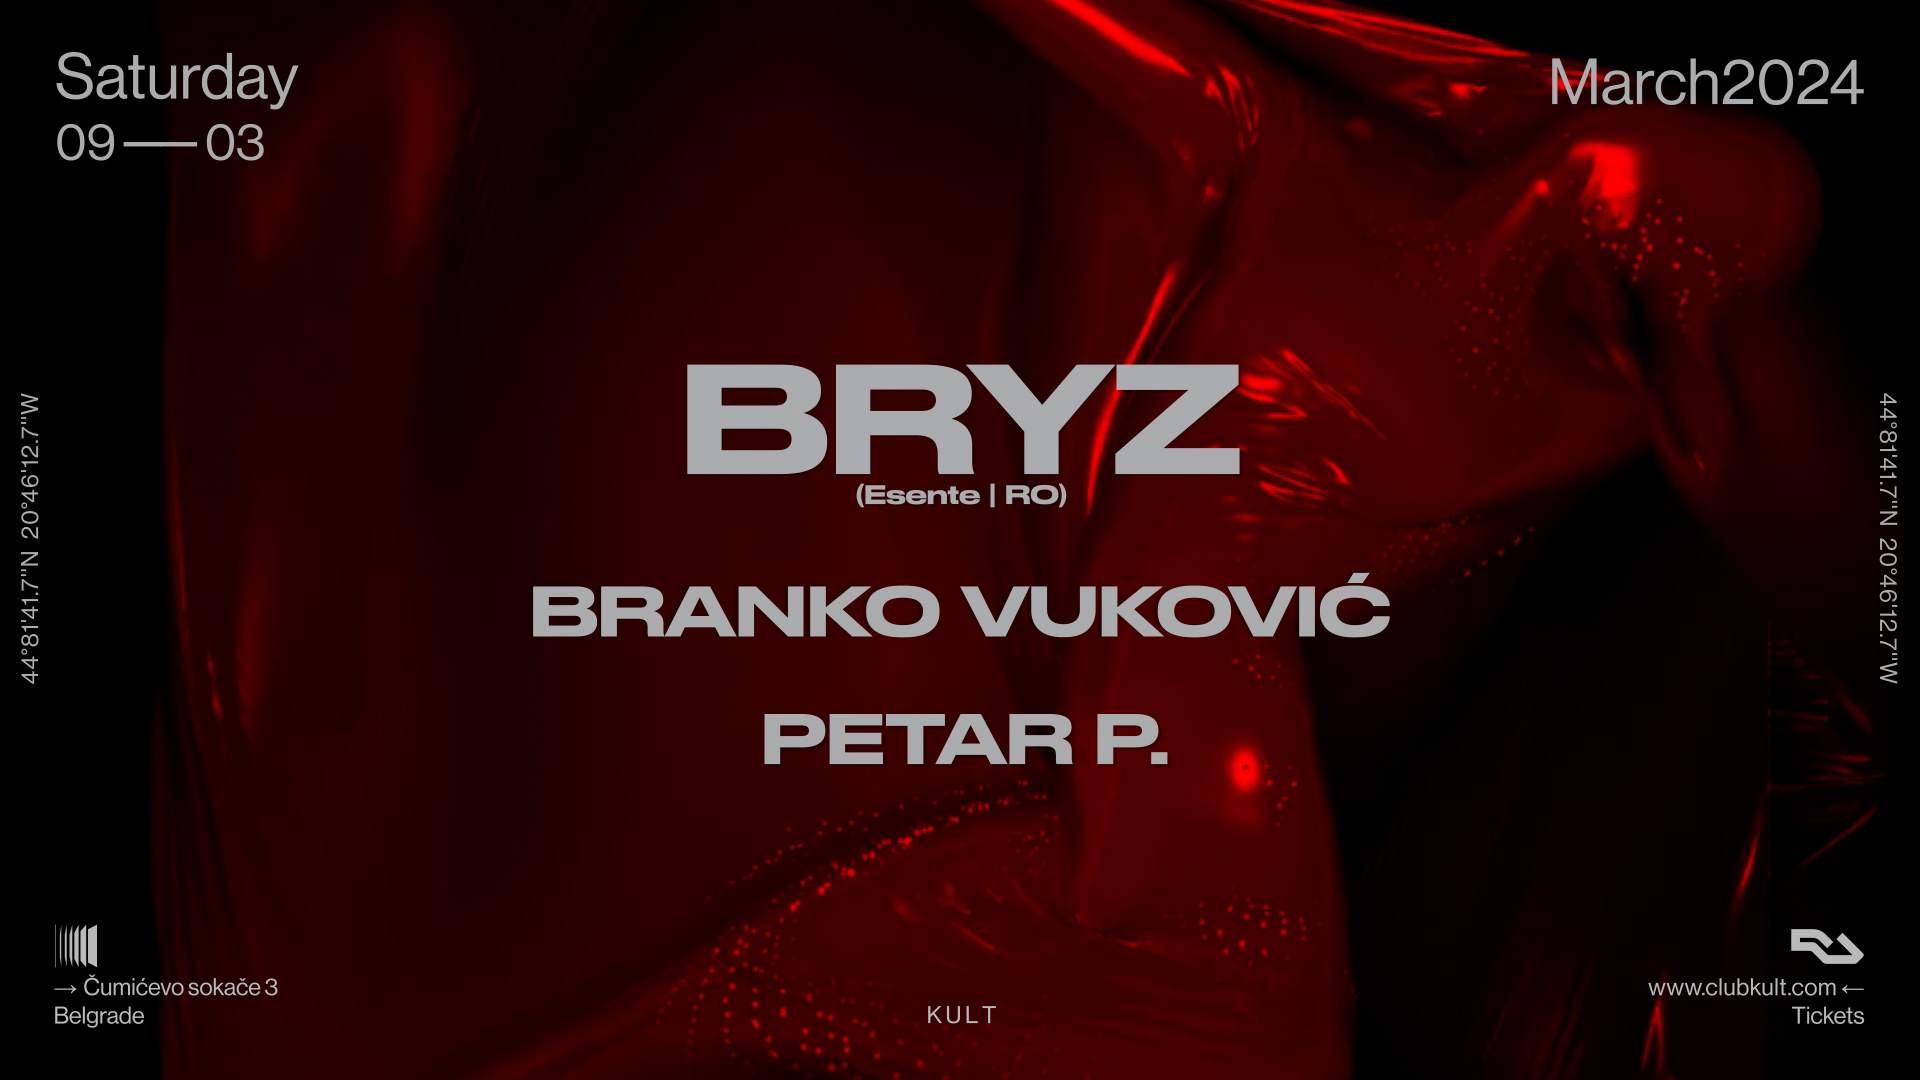 BRYZ (RO), Branko Vukovic, Petar P. in the KULT - Página trasera